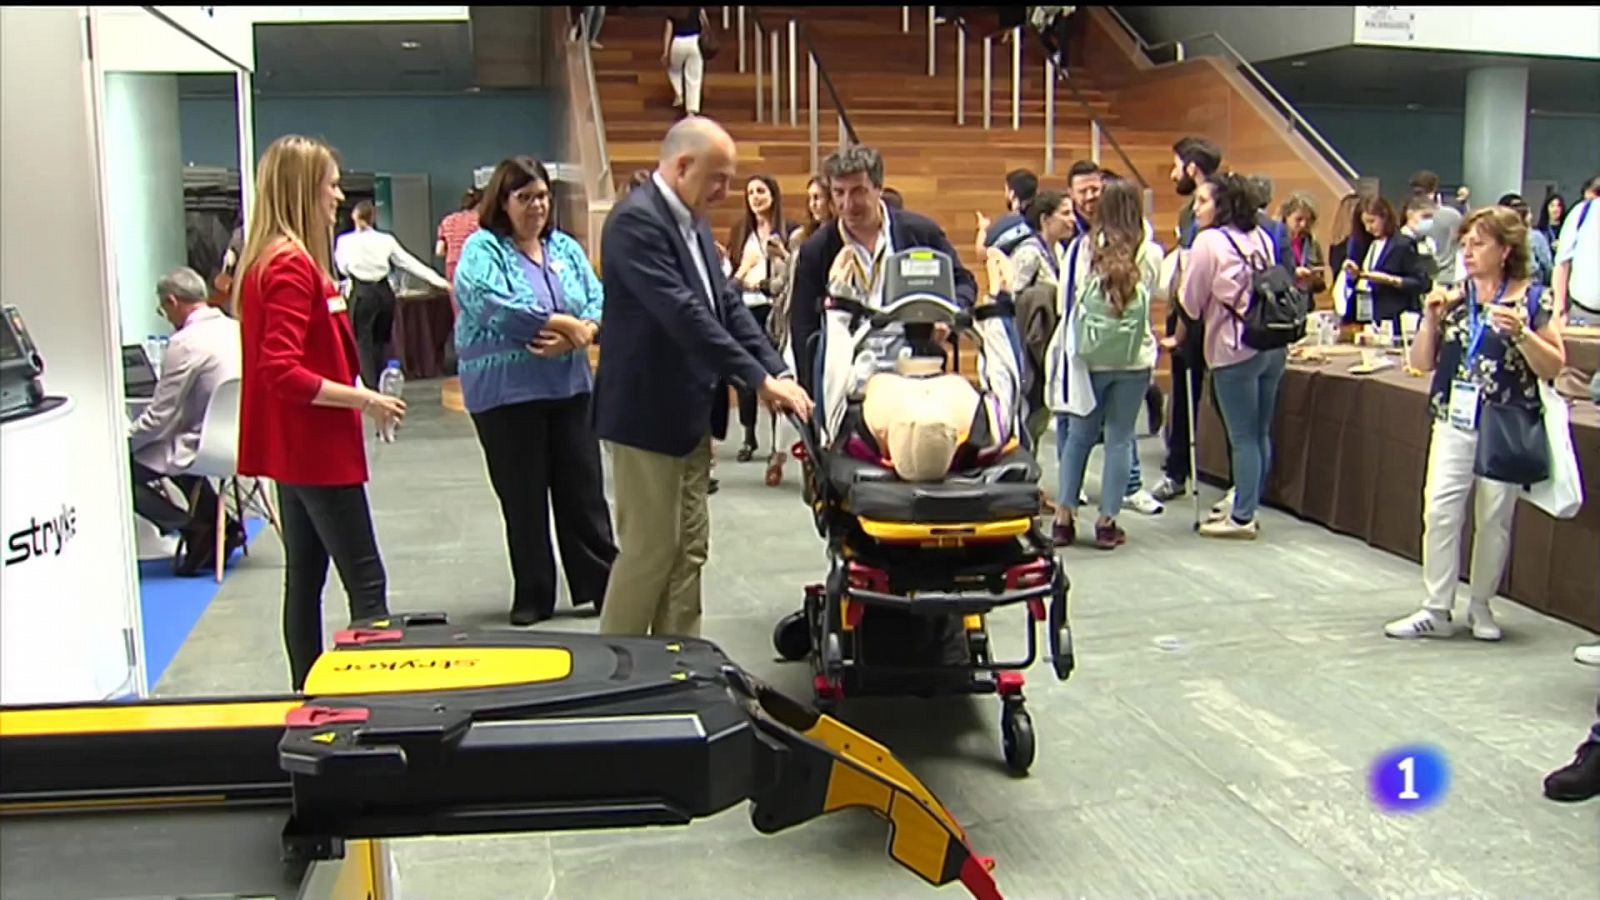 Os médicos de urxencias reclaman nun congreso en Vigo a creación dunha especialidade propia